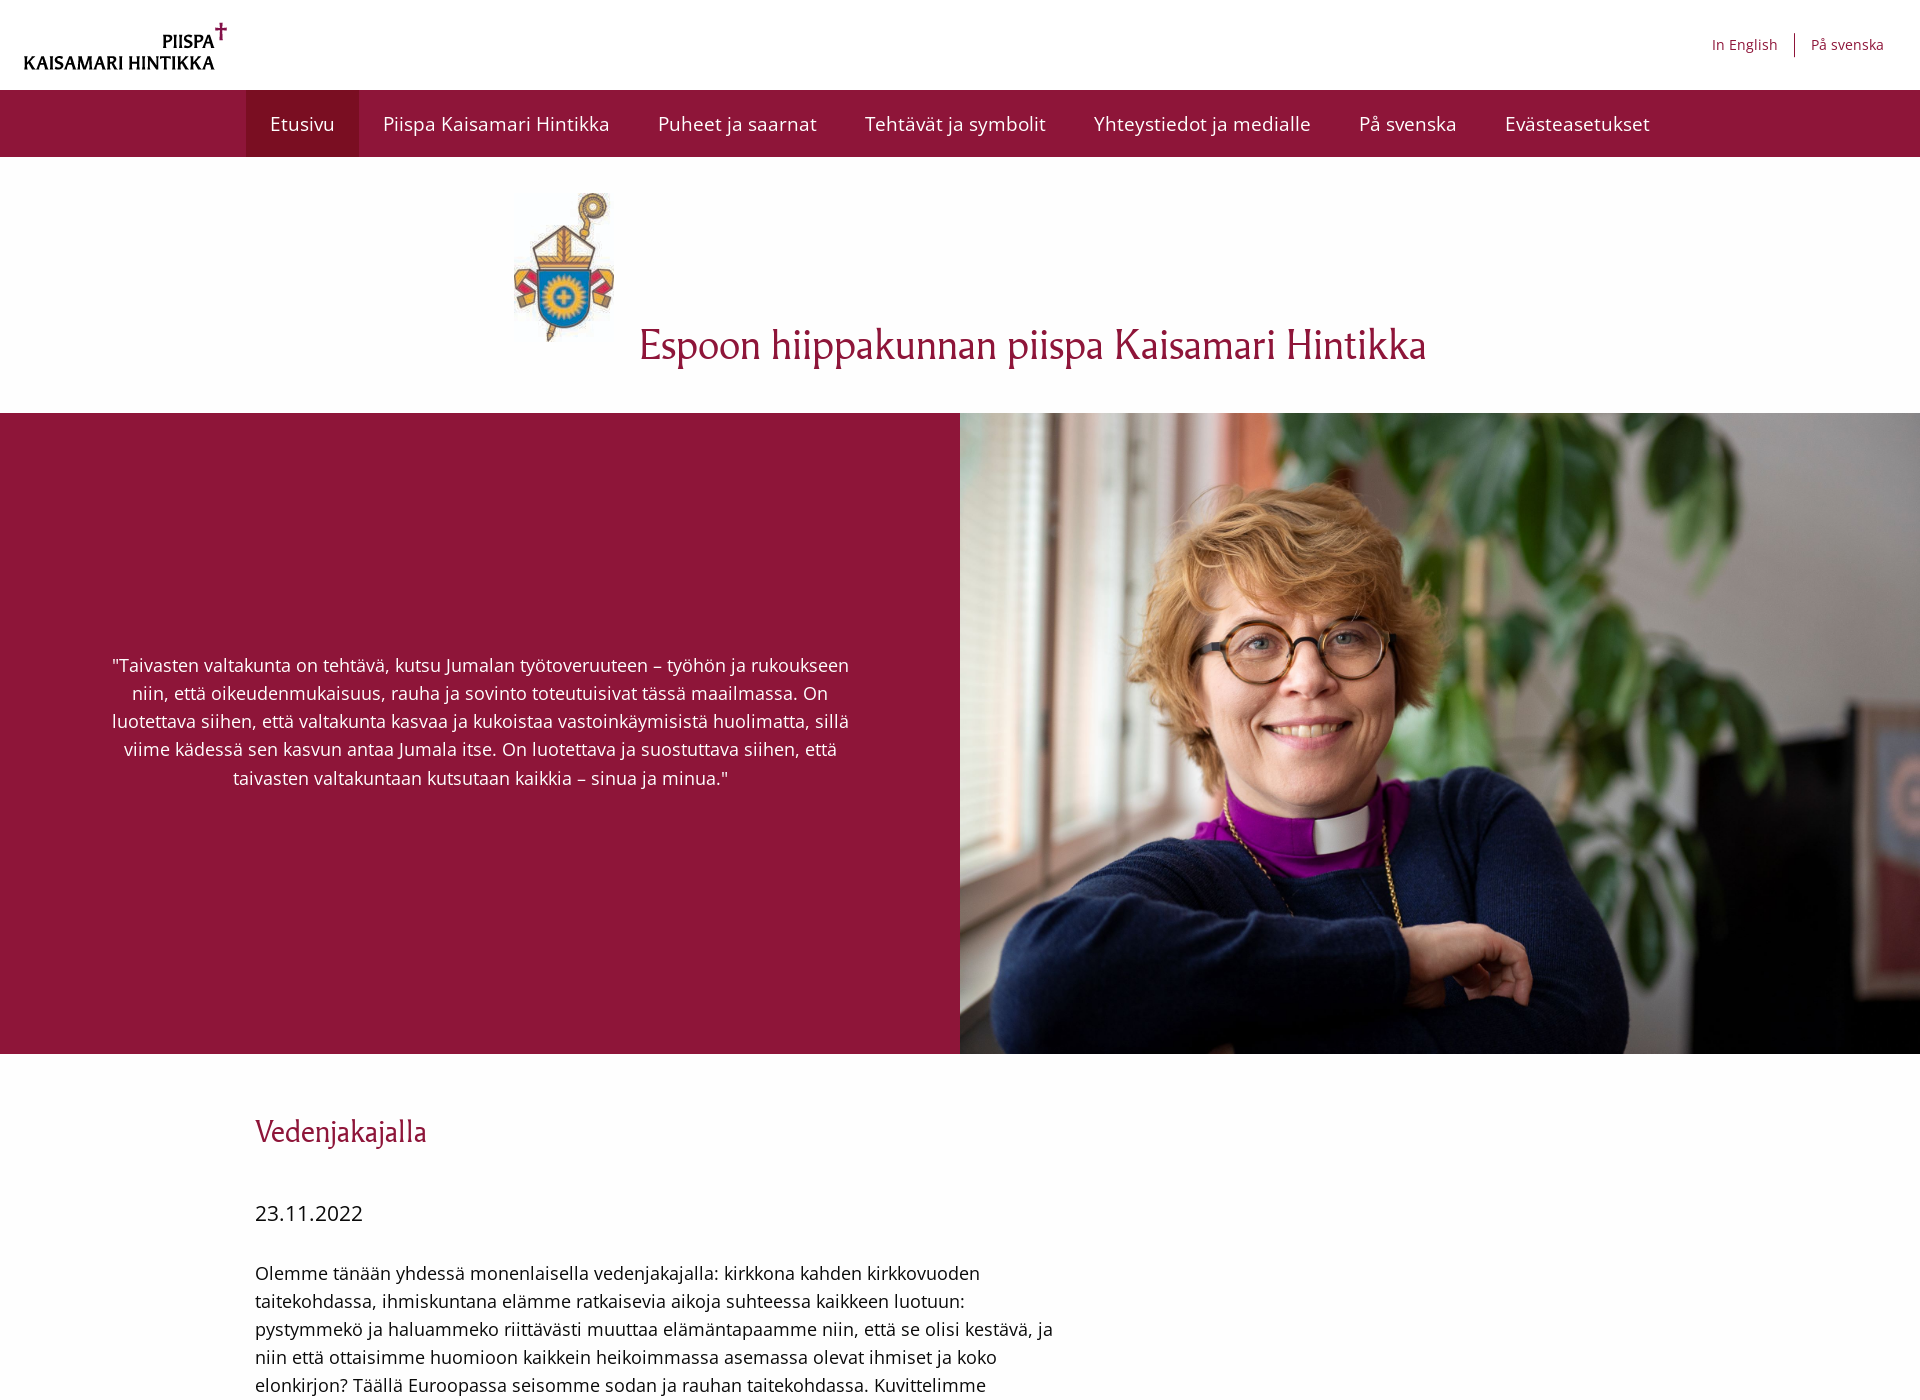 Näyttökuva piispakaisamarihintikka.fi